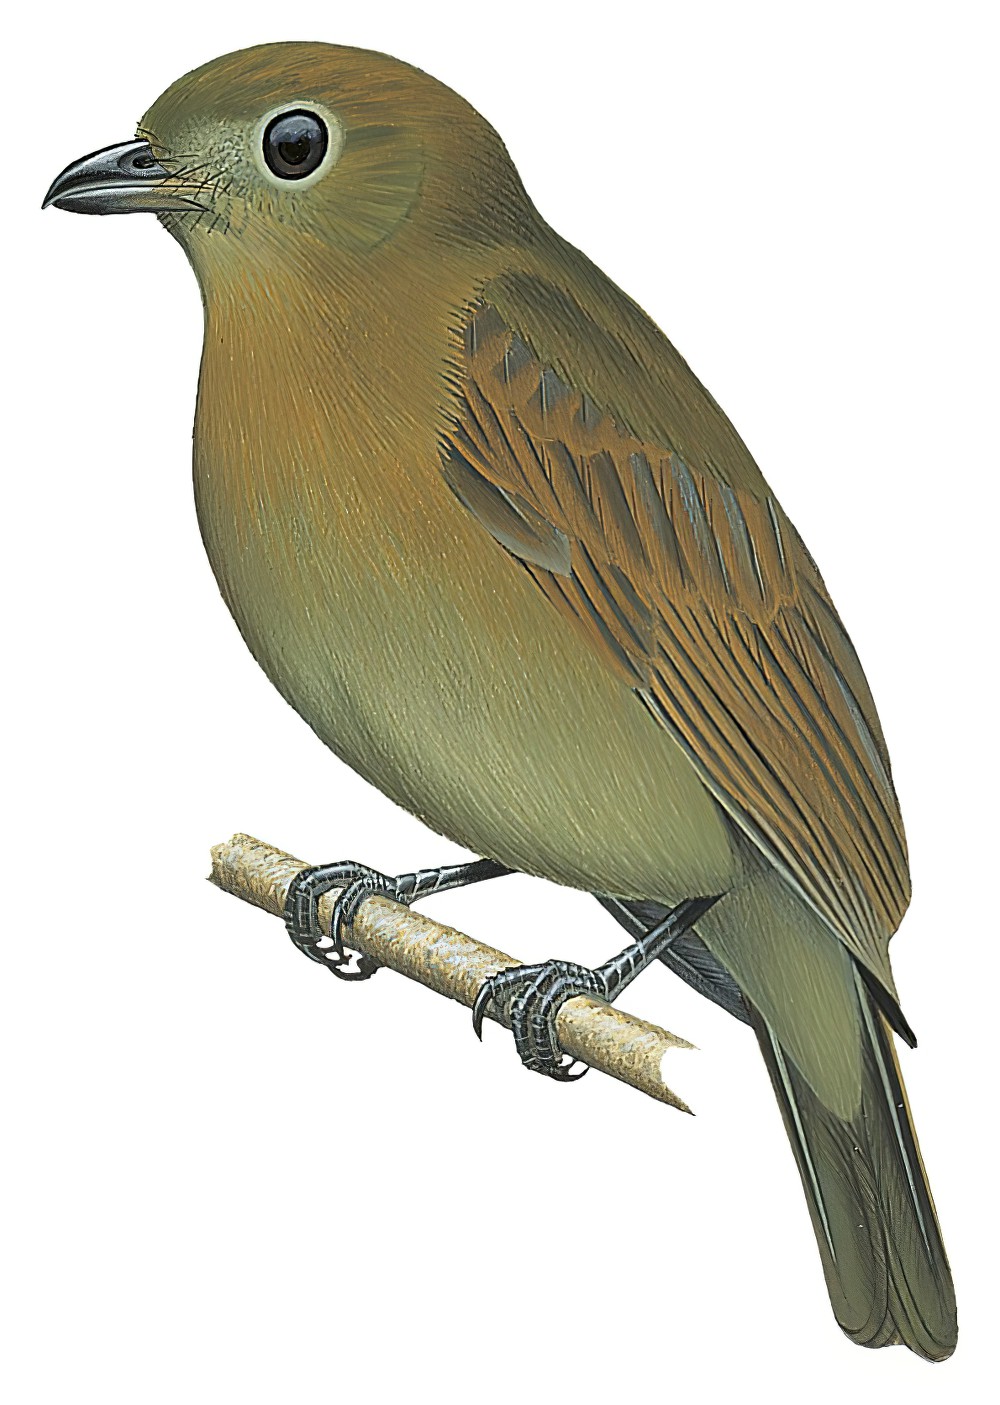 黄翅霸鹟 / Russet-winged Schiffornis / Schiffornis stenorhyncha